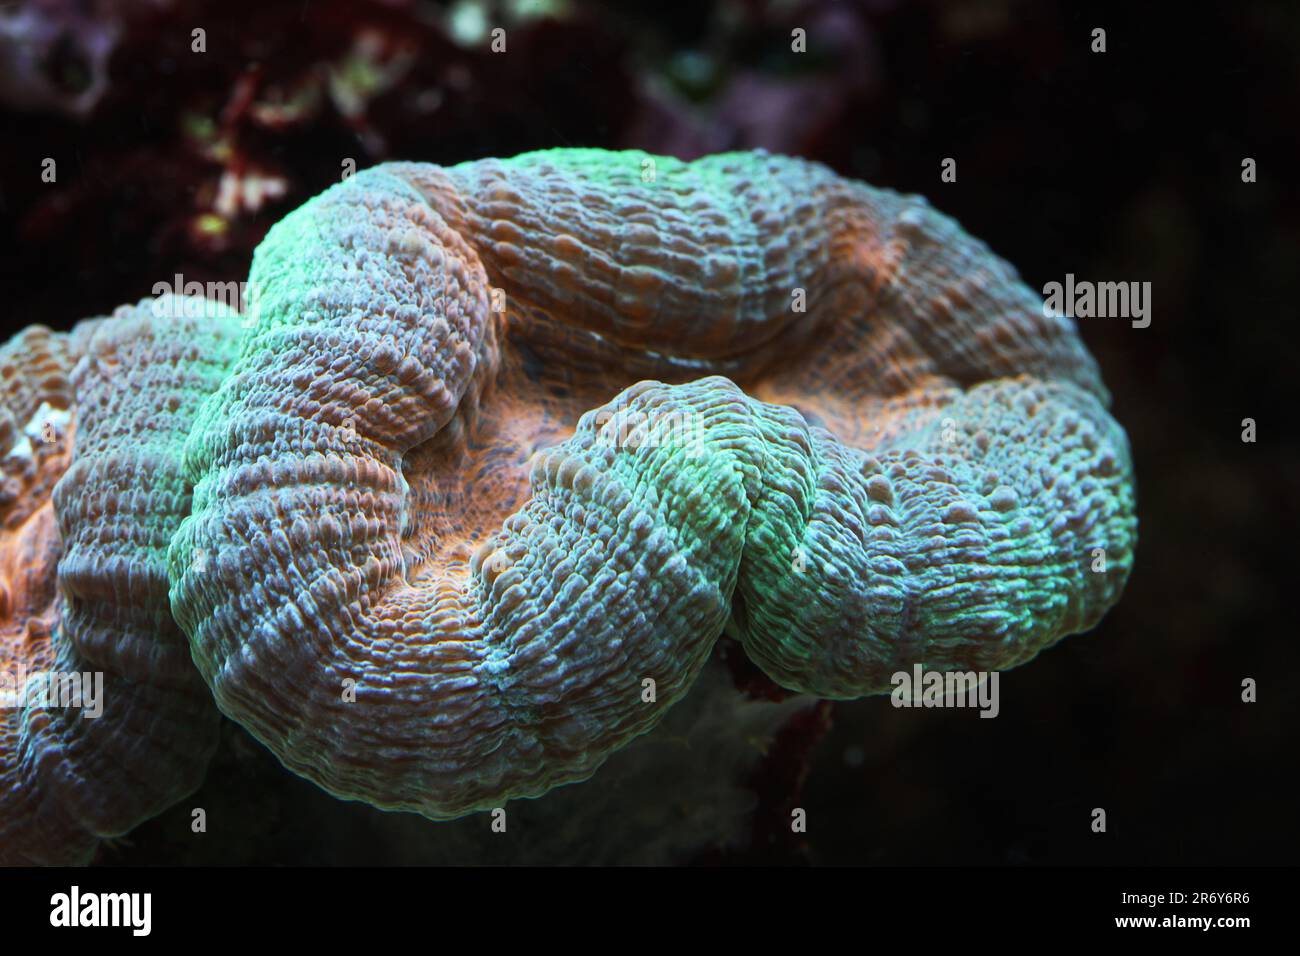 LPS coral [ Lobophyllia sp ] in marine reef aquarium Stock Photo